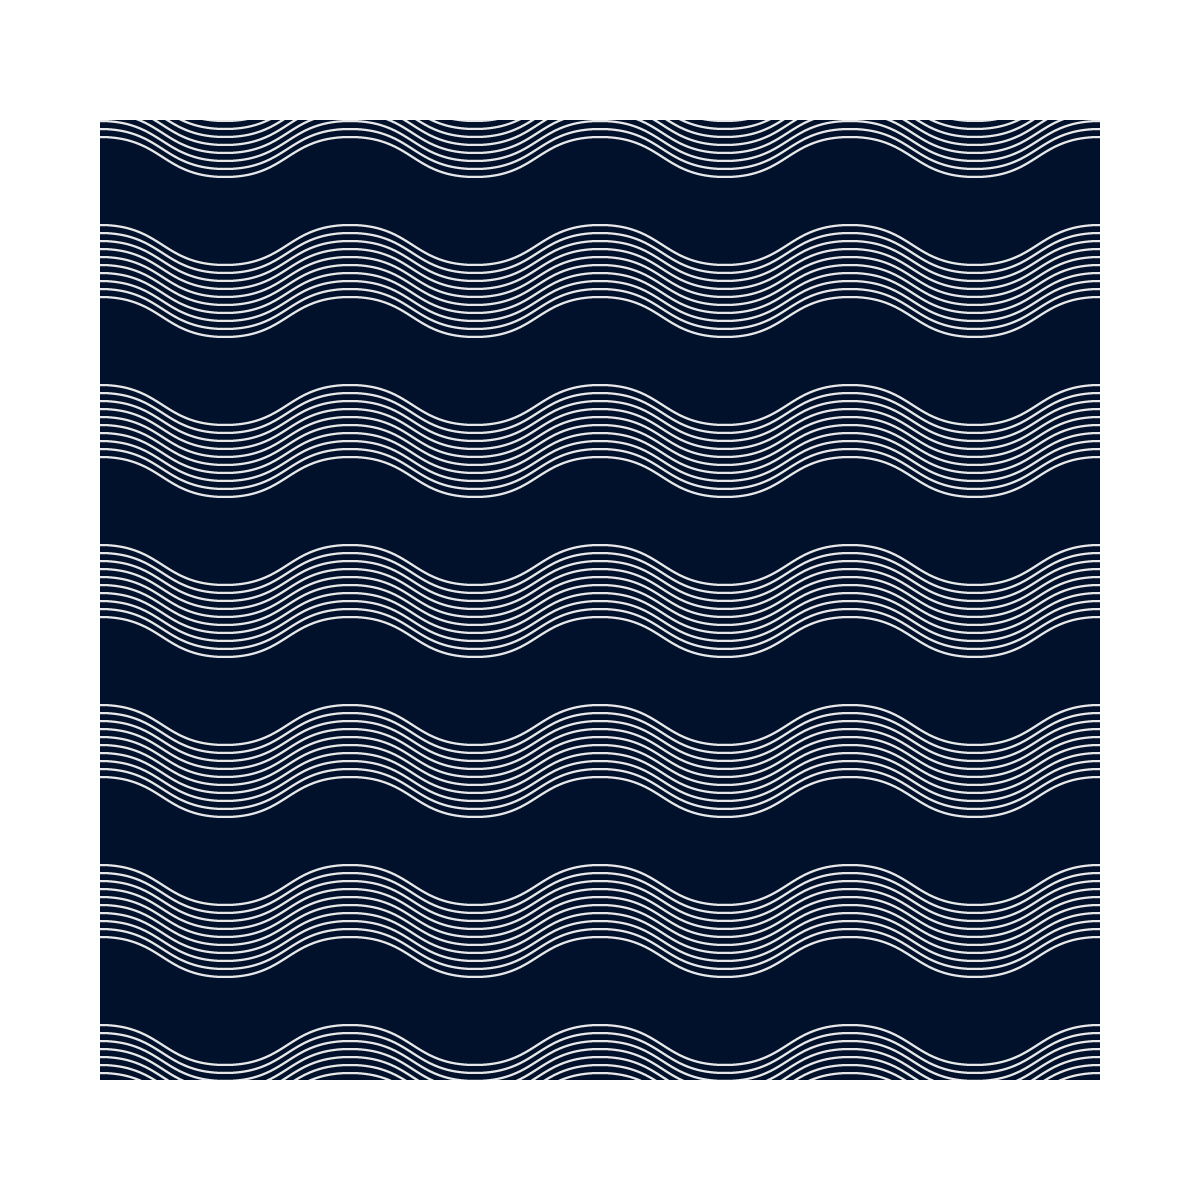 Blue waves exterior decor - UV-resistant